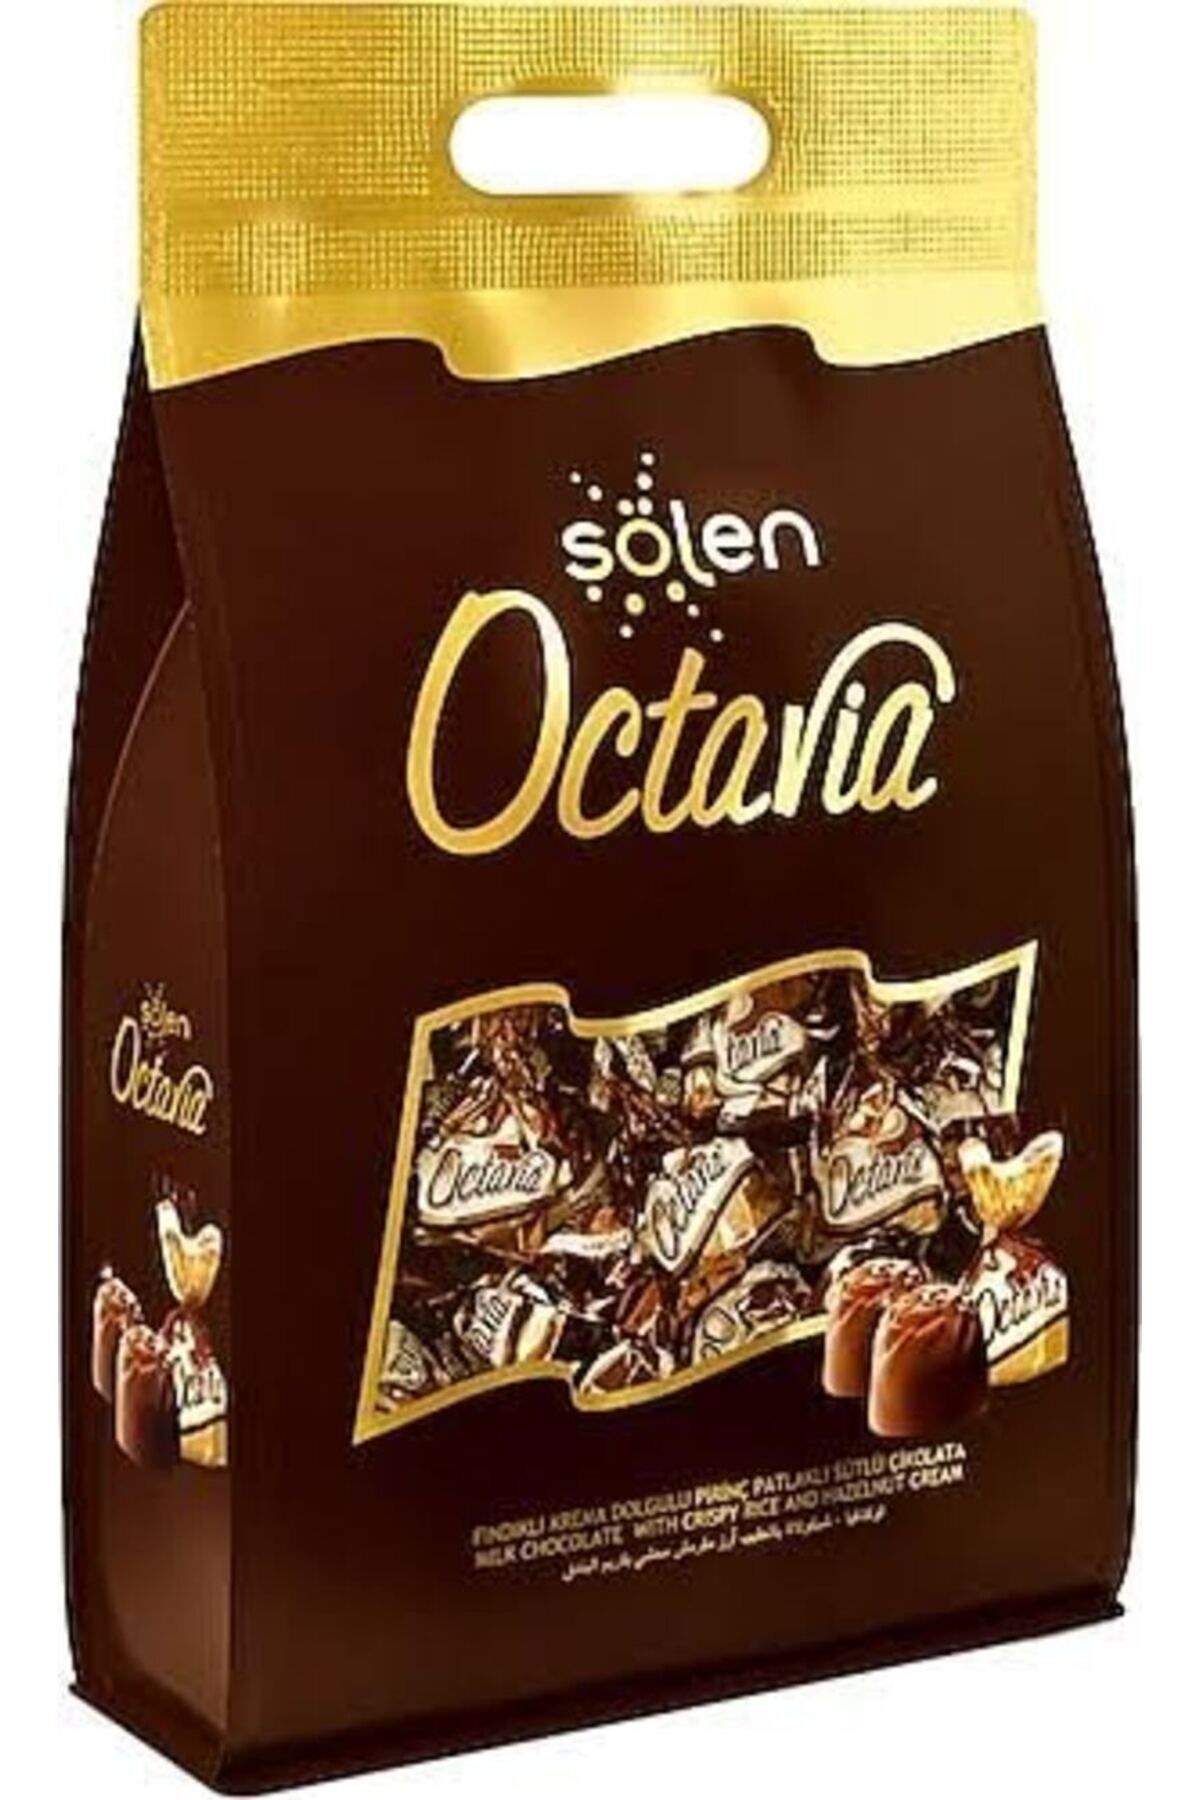 Şölen Çikolata Octavia Fındıklı Krema Dolgulu Pirinç Patlaklı Sütlü Çikolata 262 gr